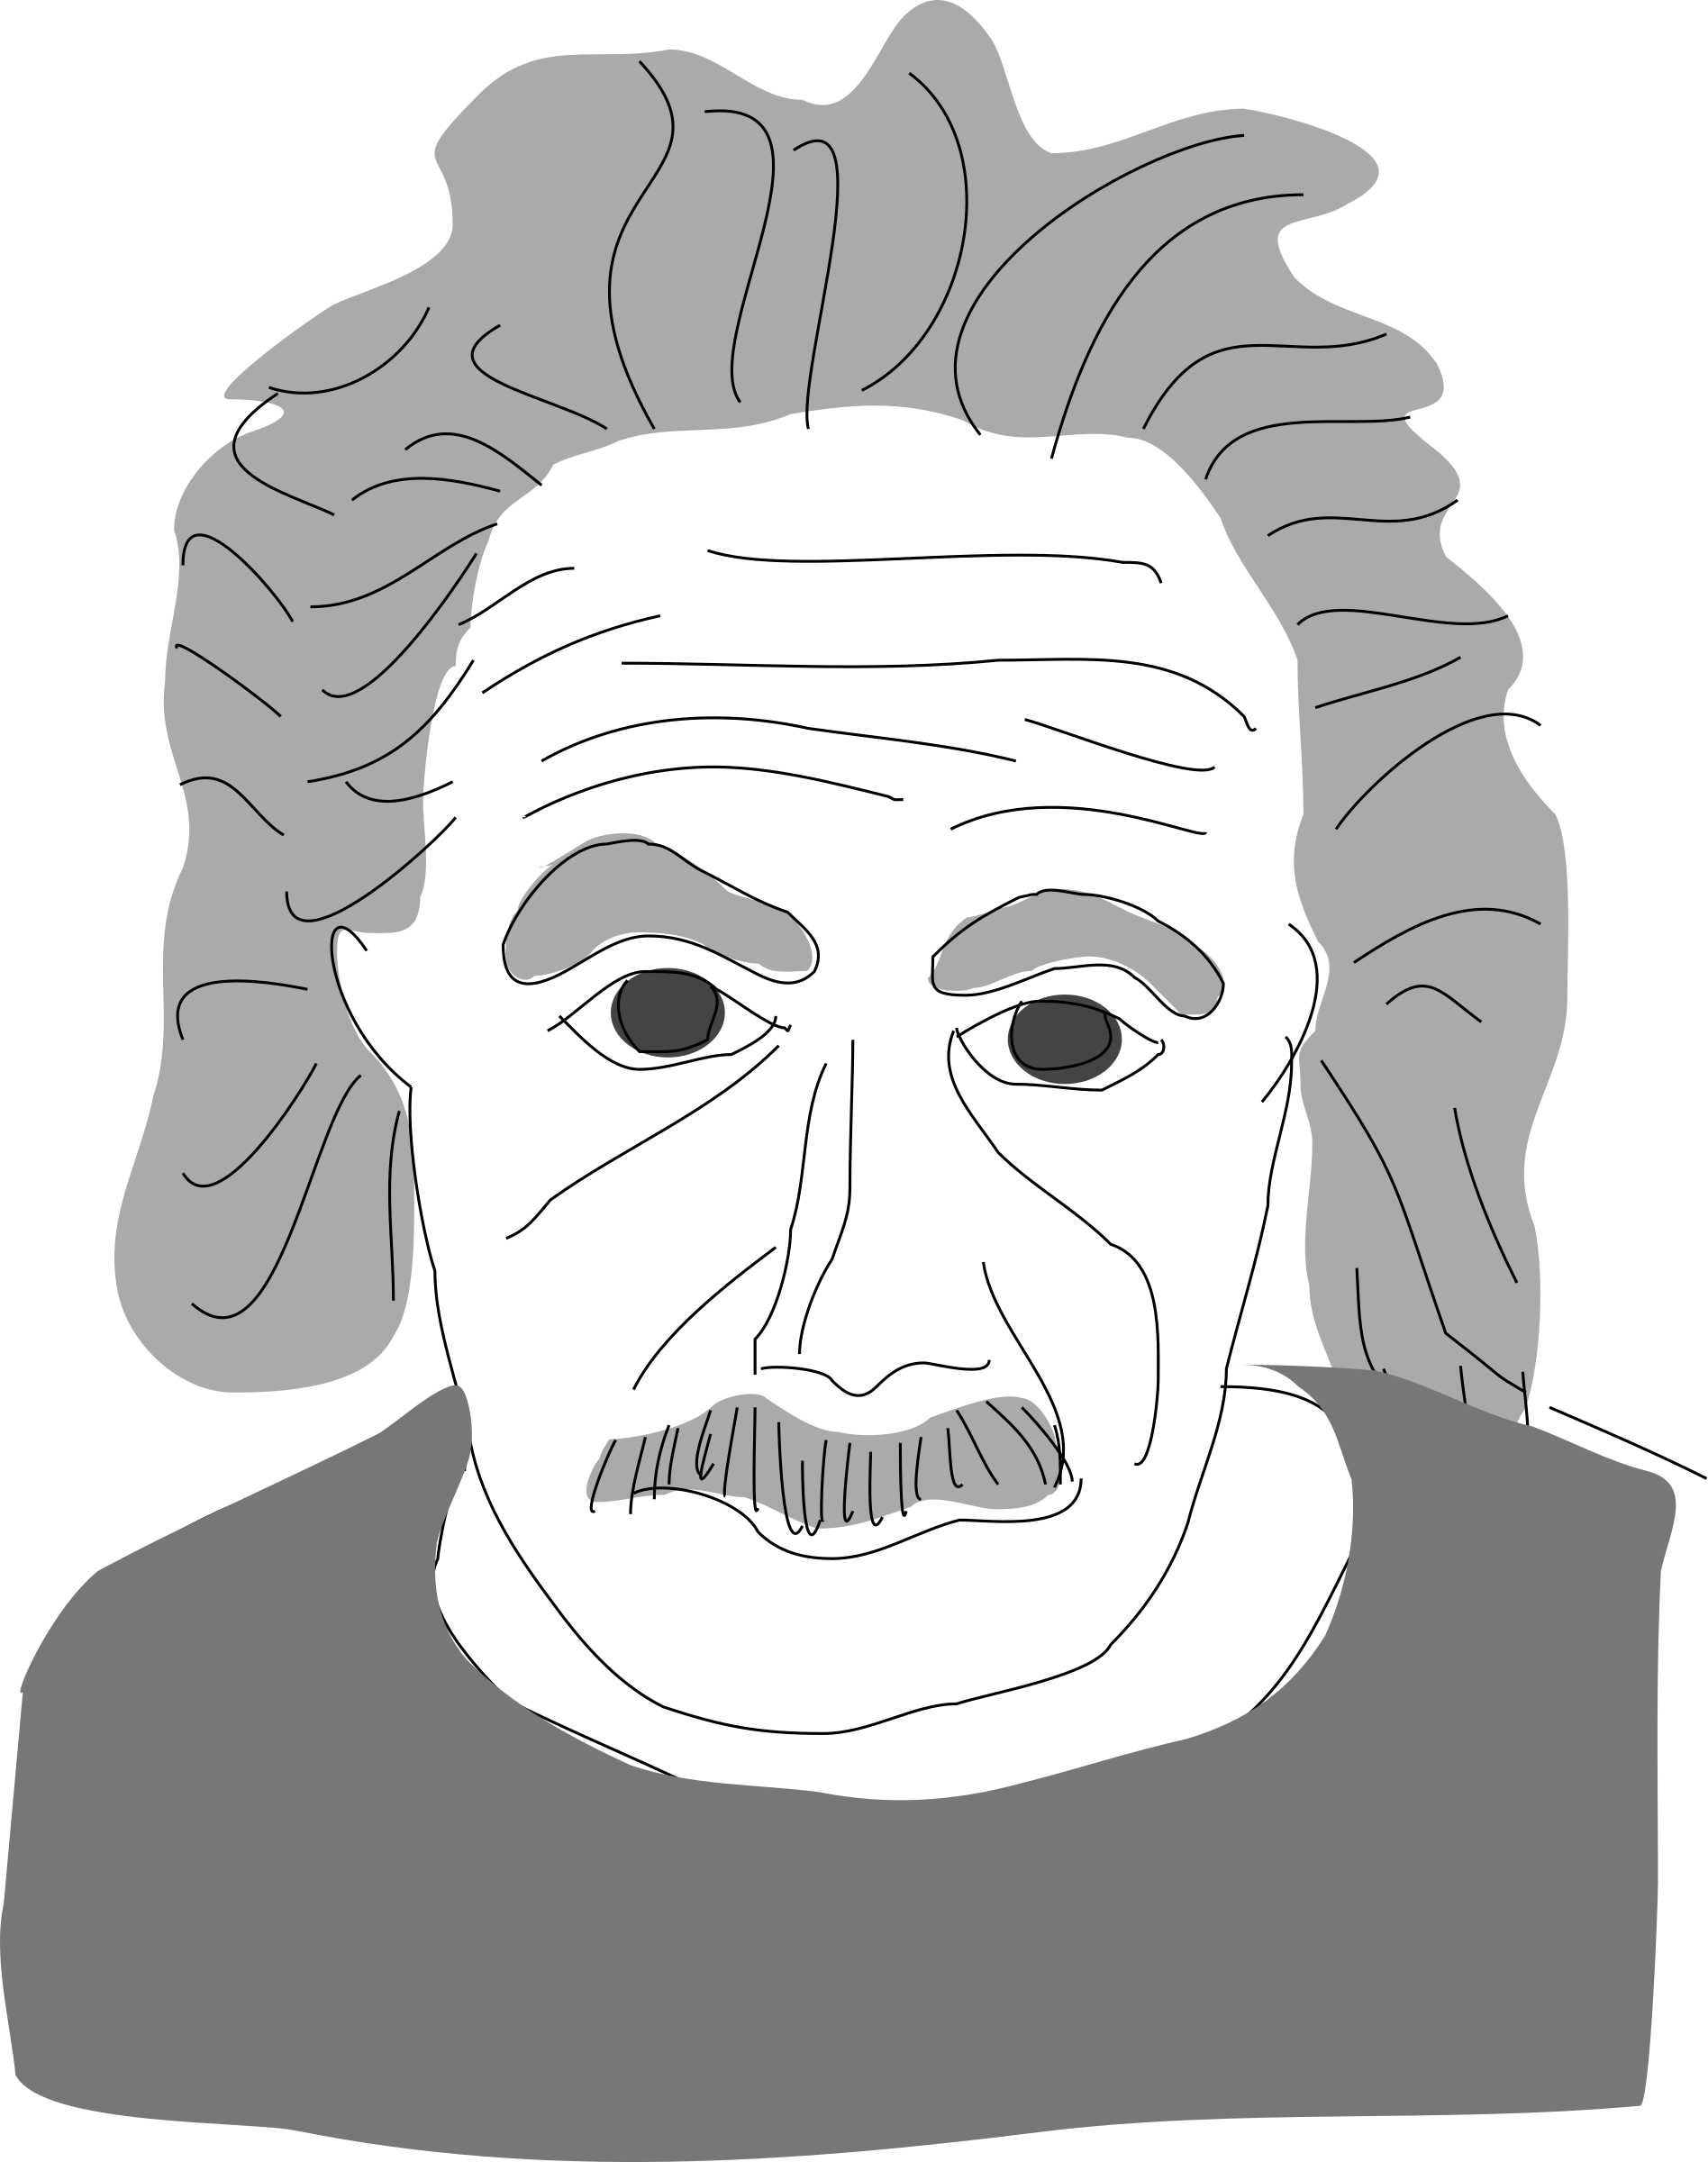 Big image png. Einstein clipart head